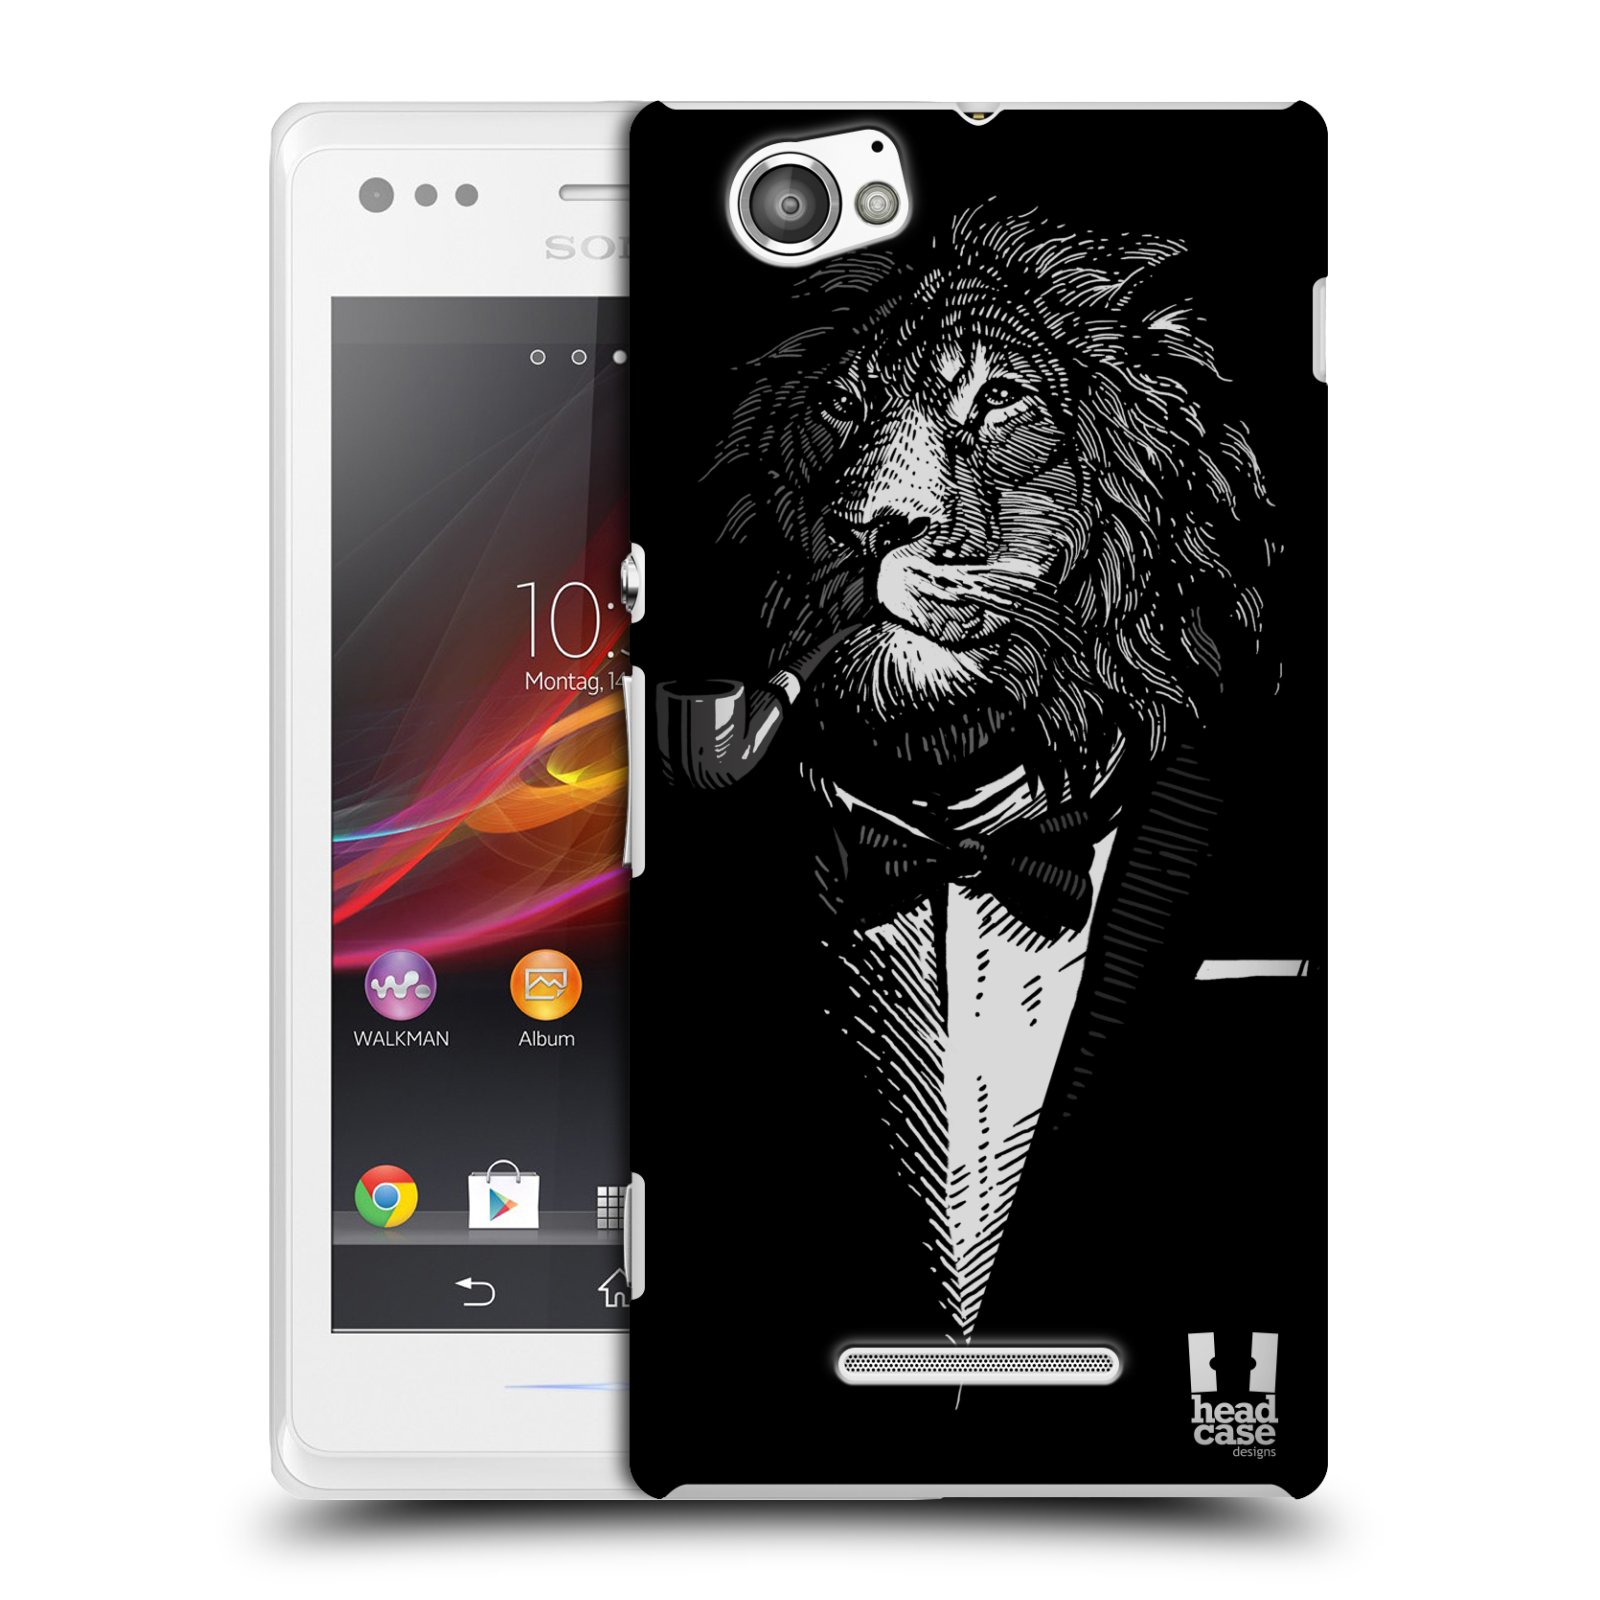 HEAD CASE plastový obal na mobil Sony Xperia M vzor Zvíře v obleku lev